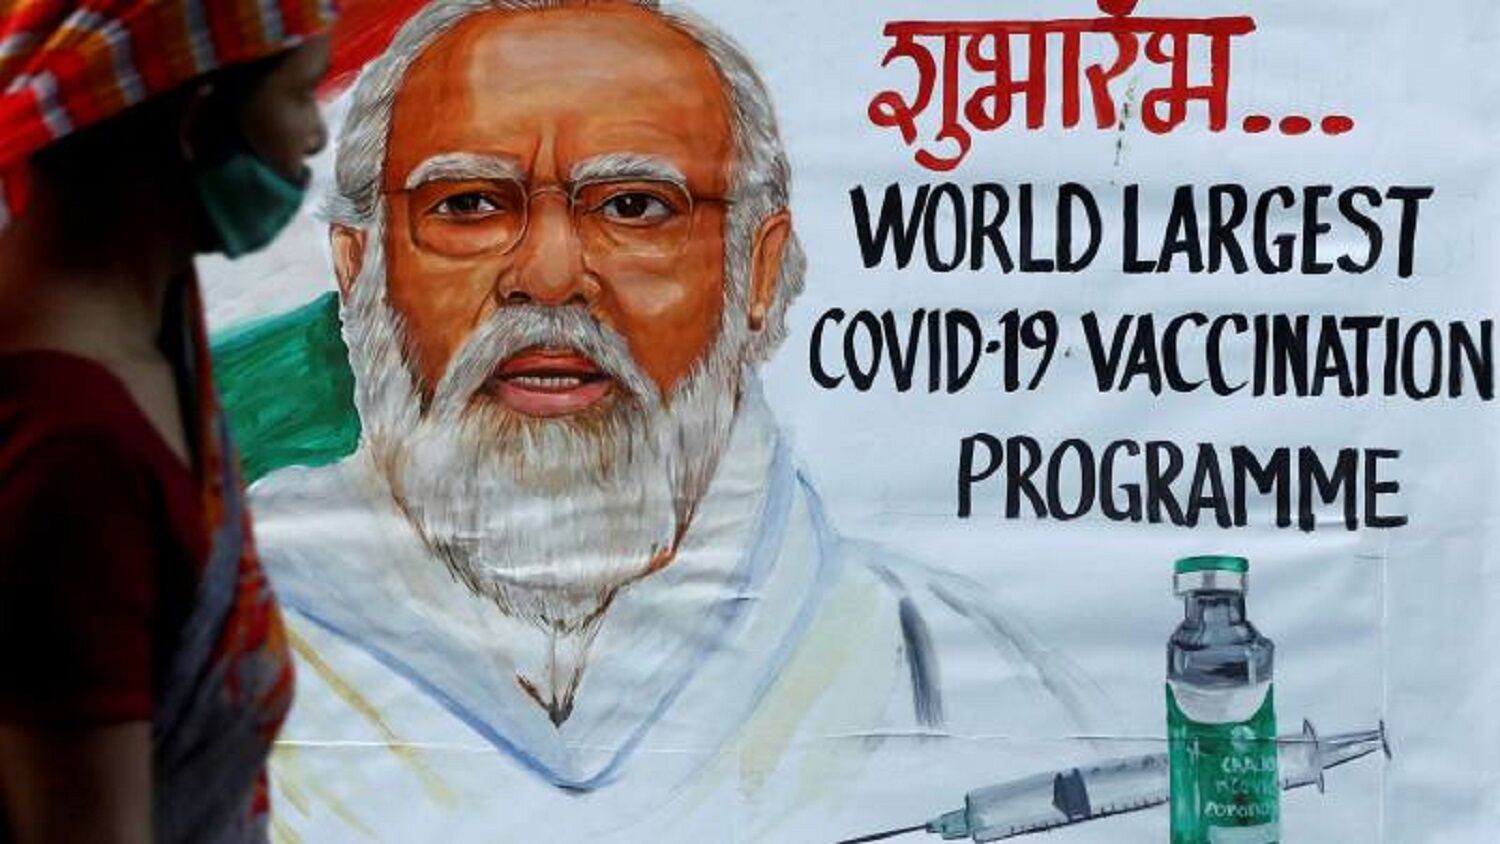 दिल्ली हाईकोर्ट की कोरोना टीके को लेकर मोदी सरकार को फटकार, अदालतों में लगाया नहीं भेज रहे विदेश